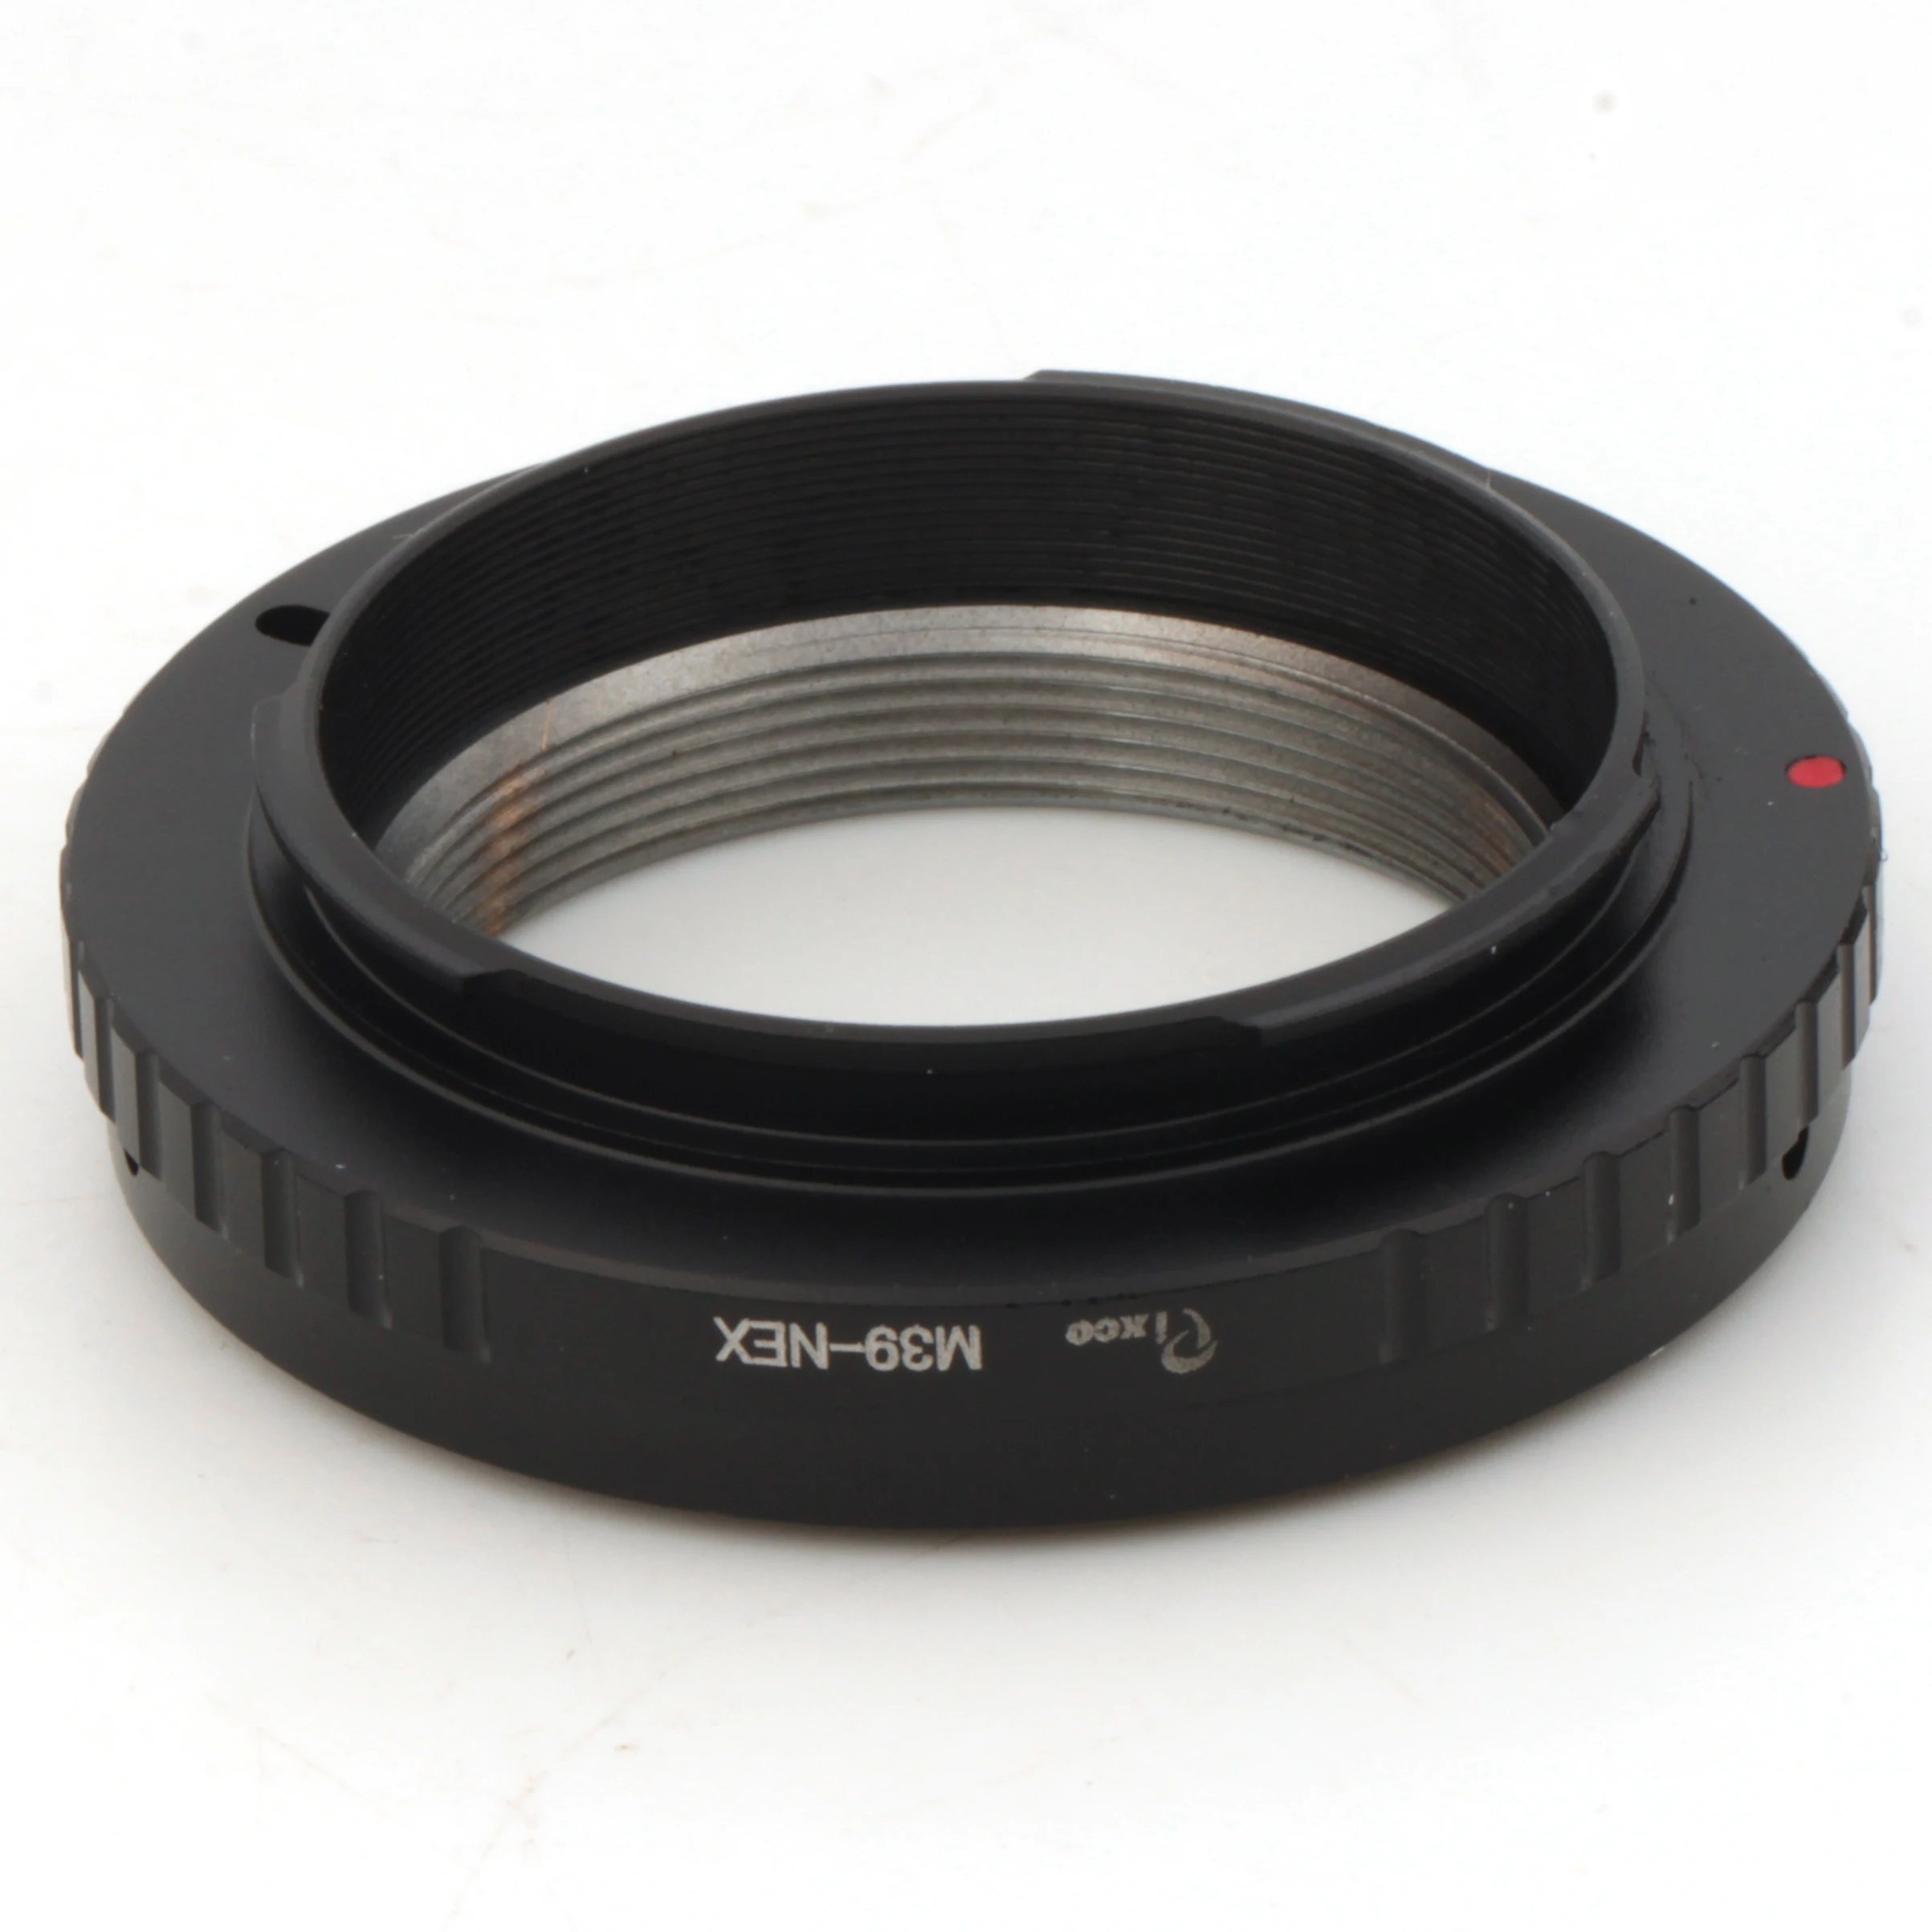 

Pixco Lens Adapter Suit For Leica M39 Lens to Sony E Mount NEX NEX-VG900 NEX-VG30 NEX-EA50 FS700 NEX-VG10 NEX-VG20 Camera